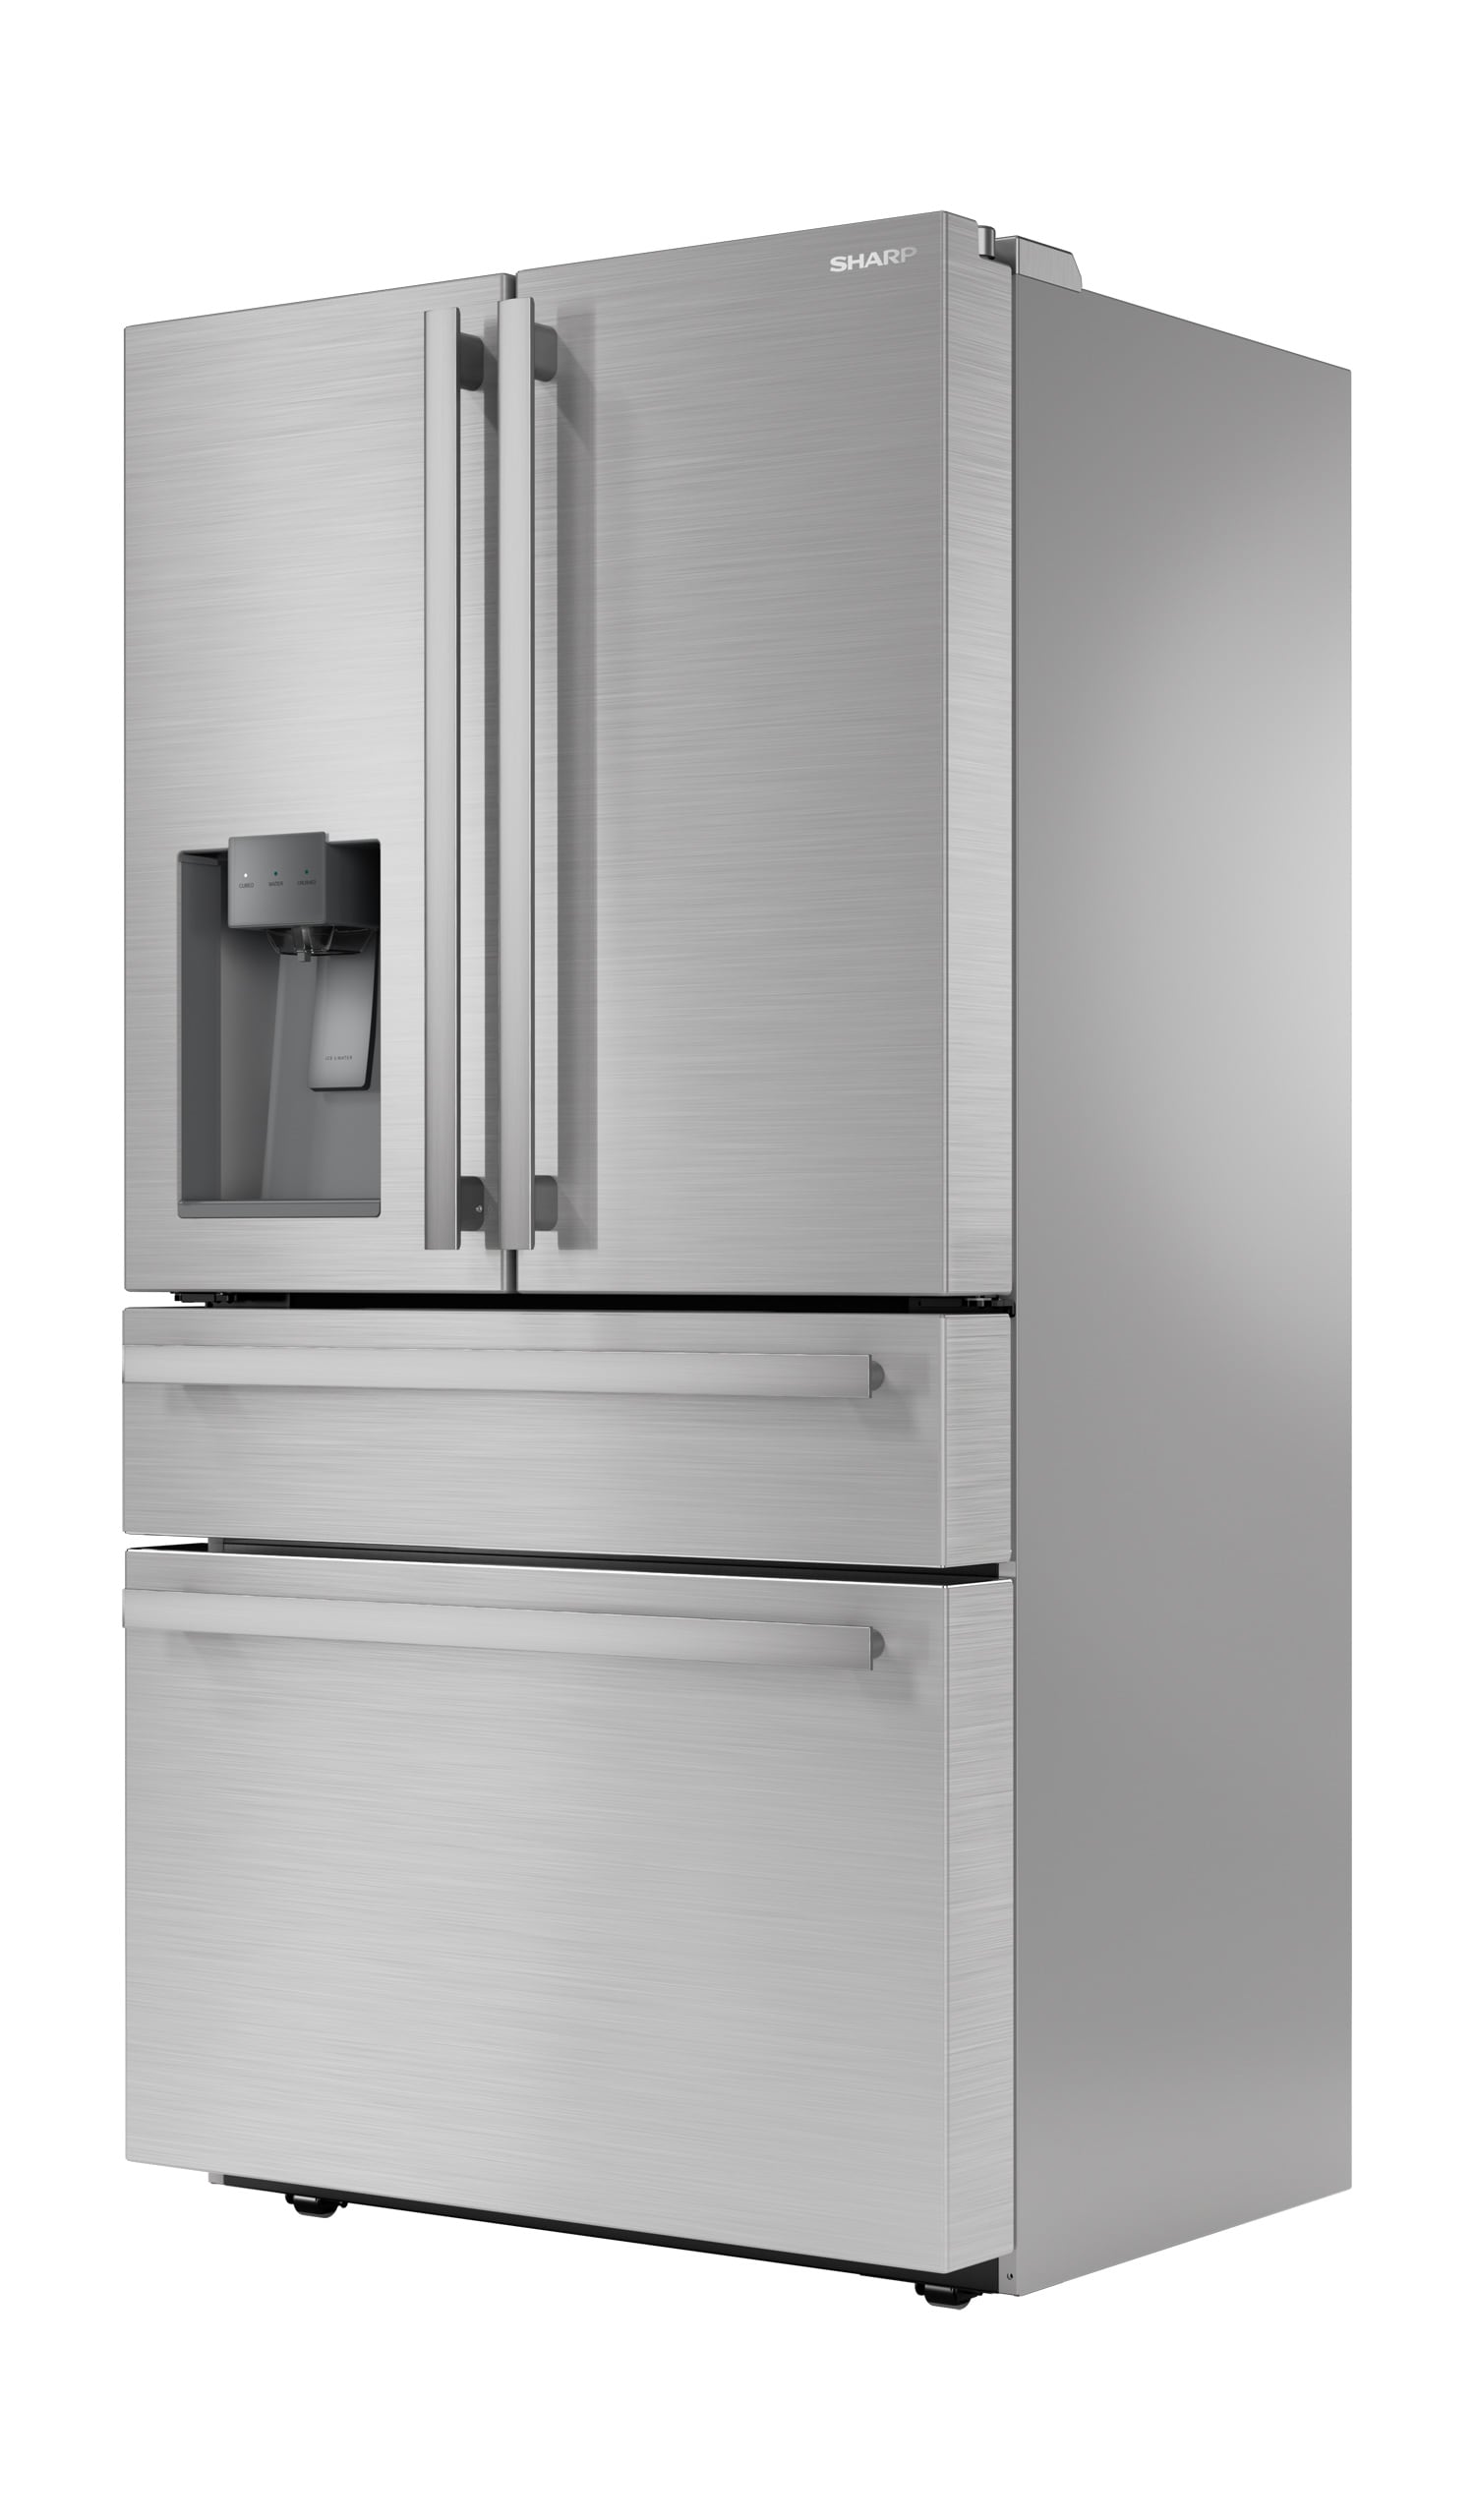 Sharp 21.6-cu ft 4-Door Counter-depth French Door Refrigerator with Ice  Maker (Stainless Steel) ENERGY STAR